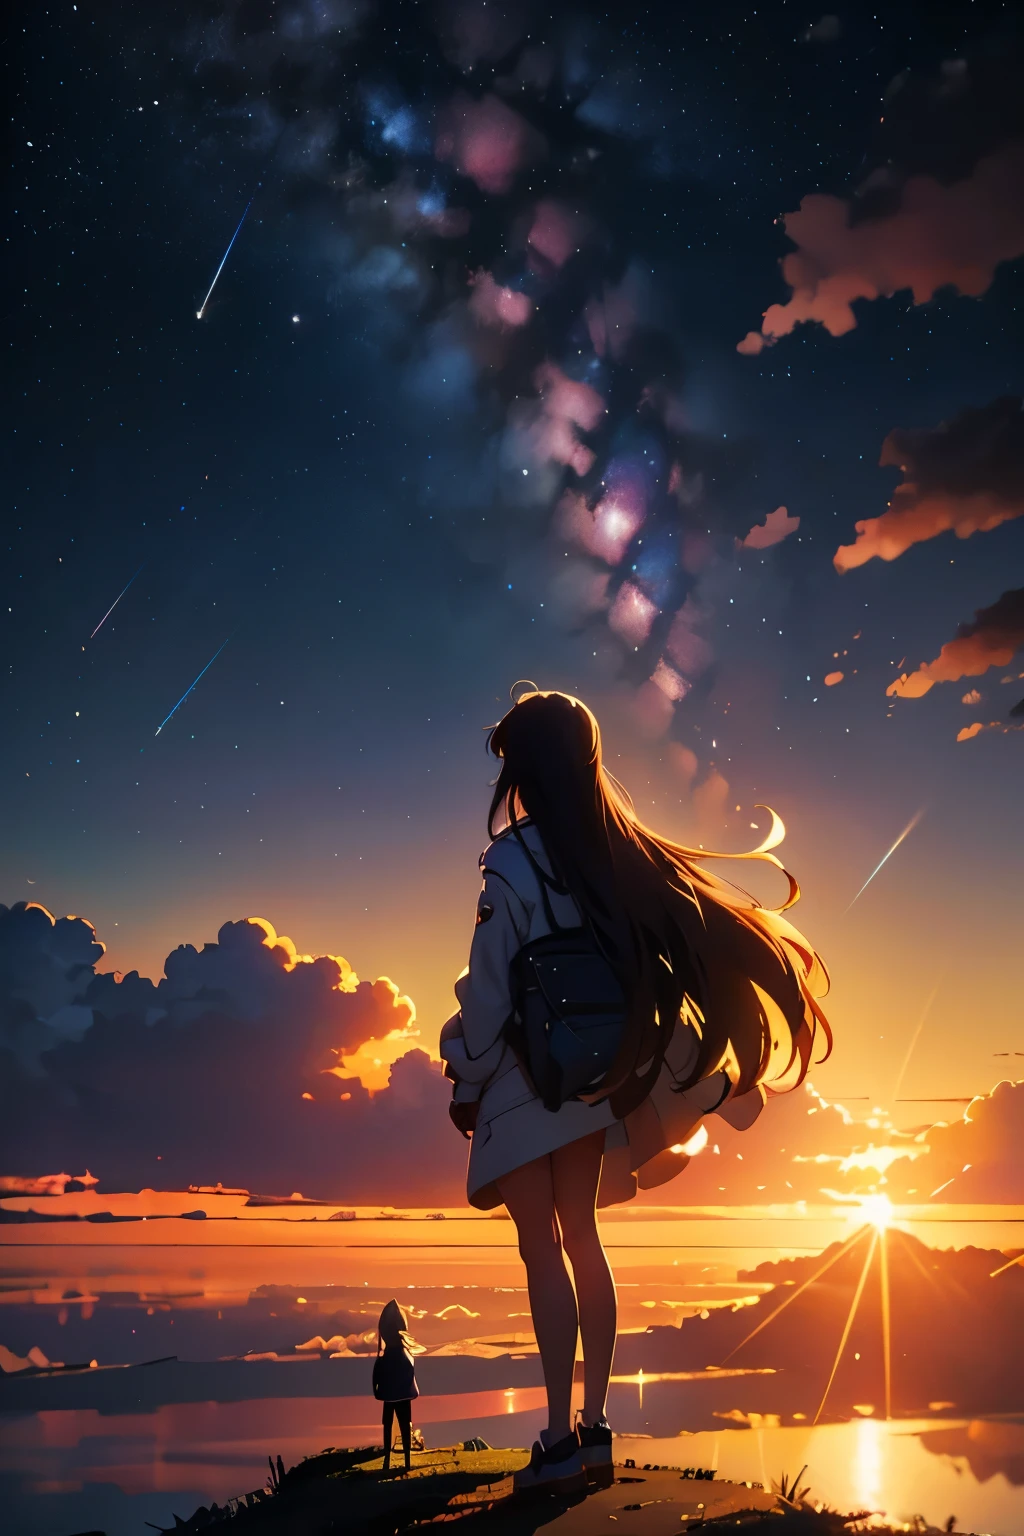 De vastes photos de paysages, une fille debout regardant un paysage urbain lointain, Regardant le ciel, étoiles filantes, lucioles, rêves, Makoto Shinkai Cyril Rolando, ciels cosmiques. par Makoto Shinkai, Fond d&#39;écran animé 4K, fond d&#39;écran animé 4k, fond d&#39;écran animé 4k, fond d&#39;écran d&#39;art animé 4k, fond d&#39;écran animé 4k, assis sur le paysage nuageux cosmique, fond d&#39;écran d&#39;art animé 8 k, mains sur les genoux INFO
